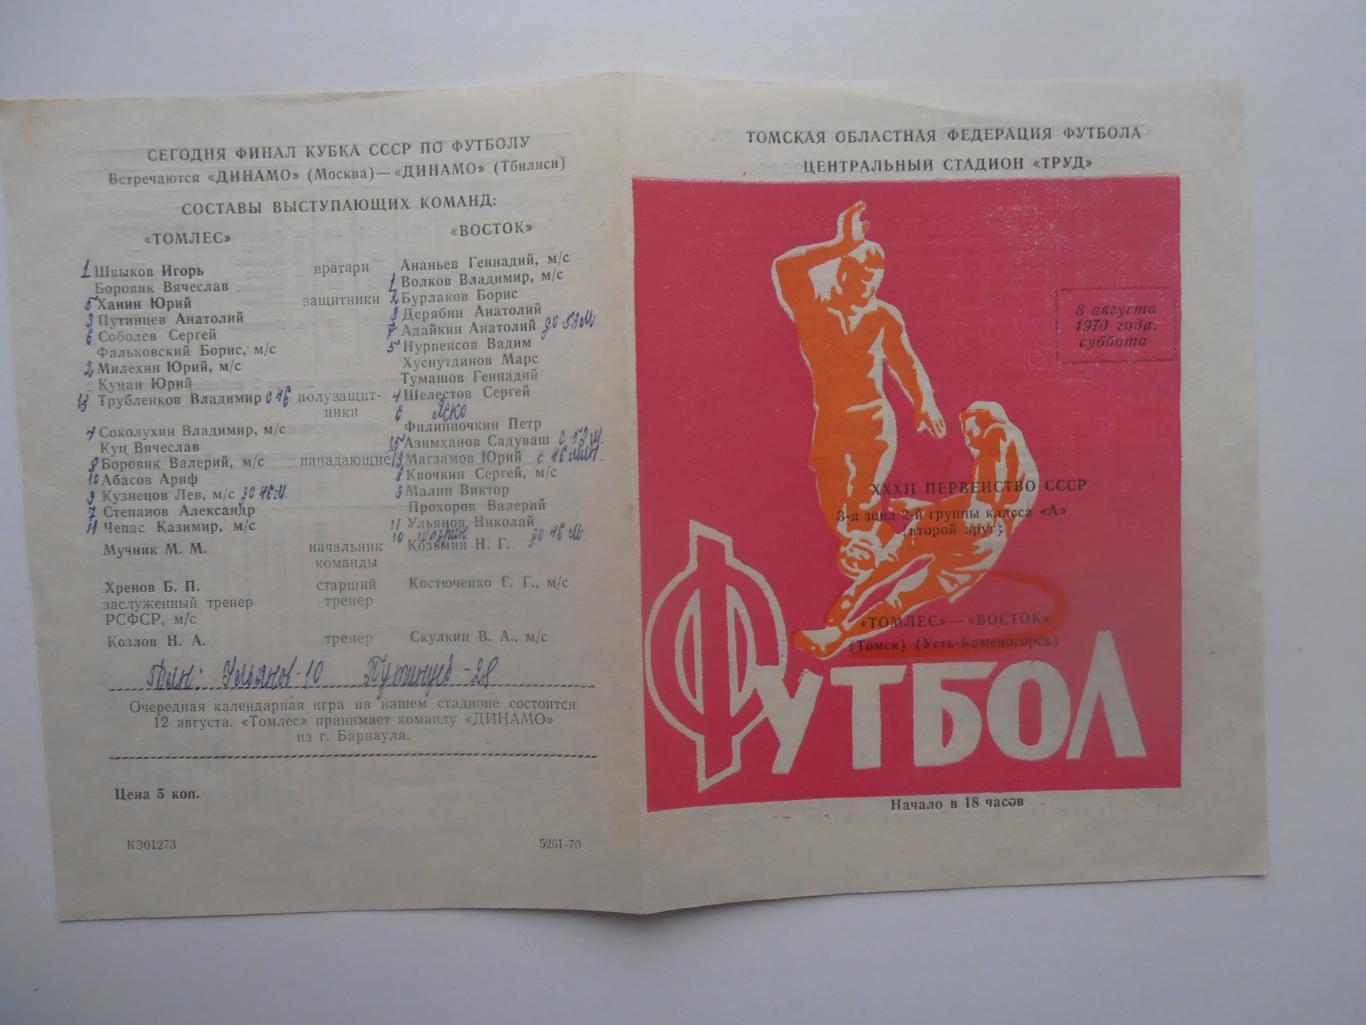 Томлес Томск-Восток Усть-Каменогорск 8 августа 1970